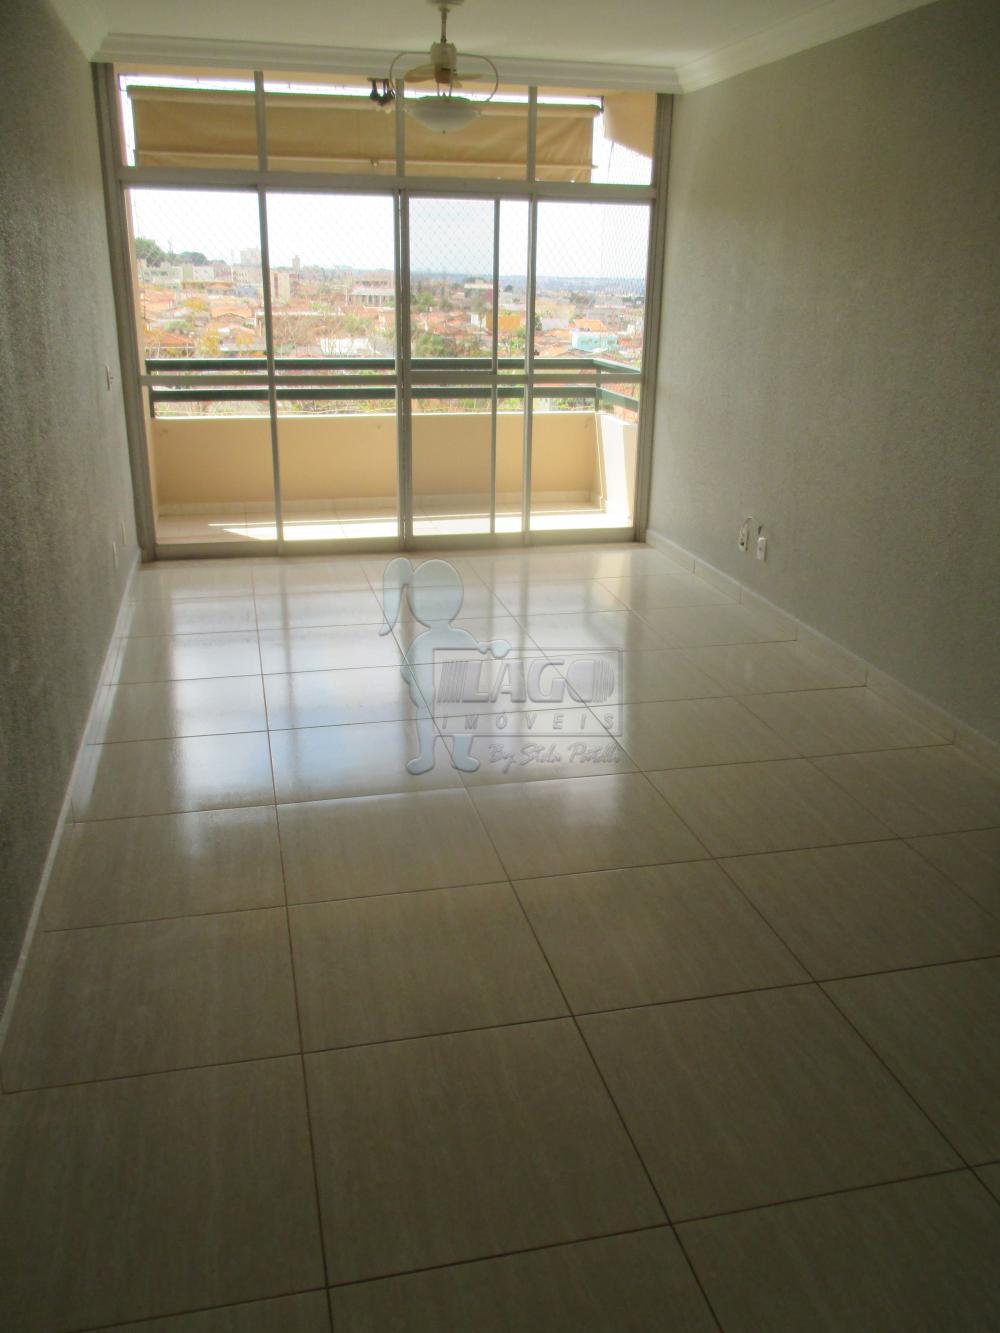 Alugar Apartamentos / Padrão em Ribeirão Preto R$ 1.100,00 - Foto 1